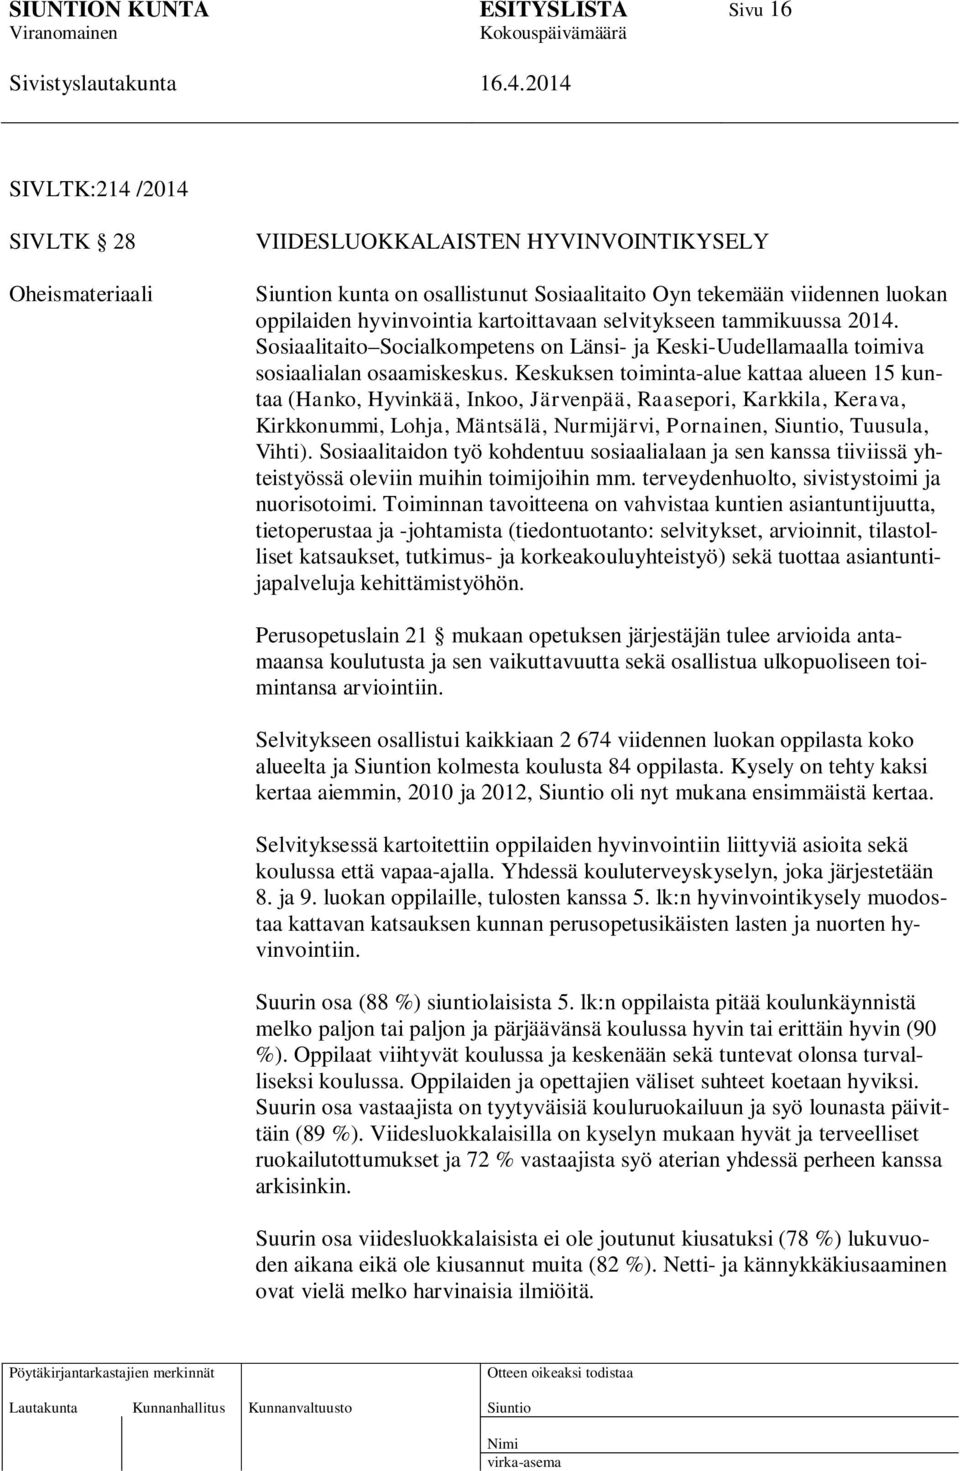 Keskuksen toiminta-alue kattaa alueen 15 kuntaa (Hanko, Hyvinkää, Inkoo, Järvenpää, Raasepori, Karkkila, Kerava, Kirkkonummi, Lohja, Mäntsälä, Nurmijärvi, Pornainen,, Tuusula, Vihti).